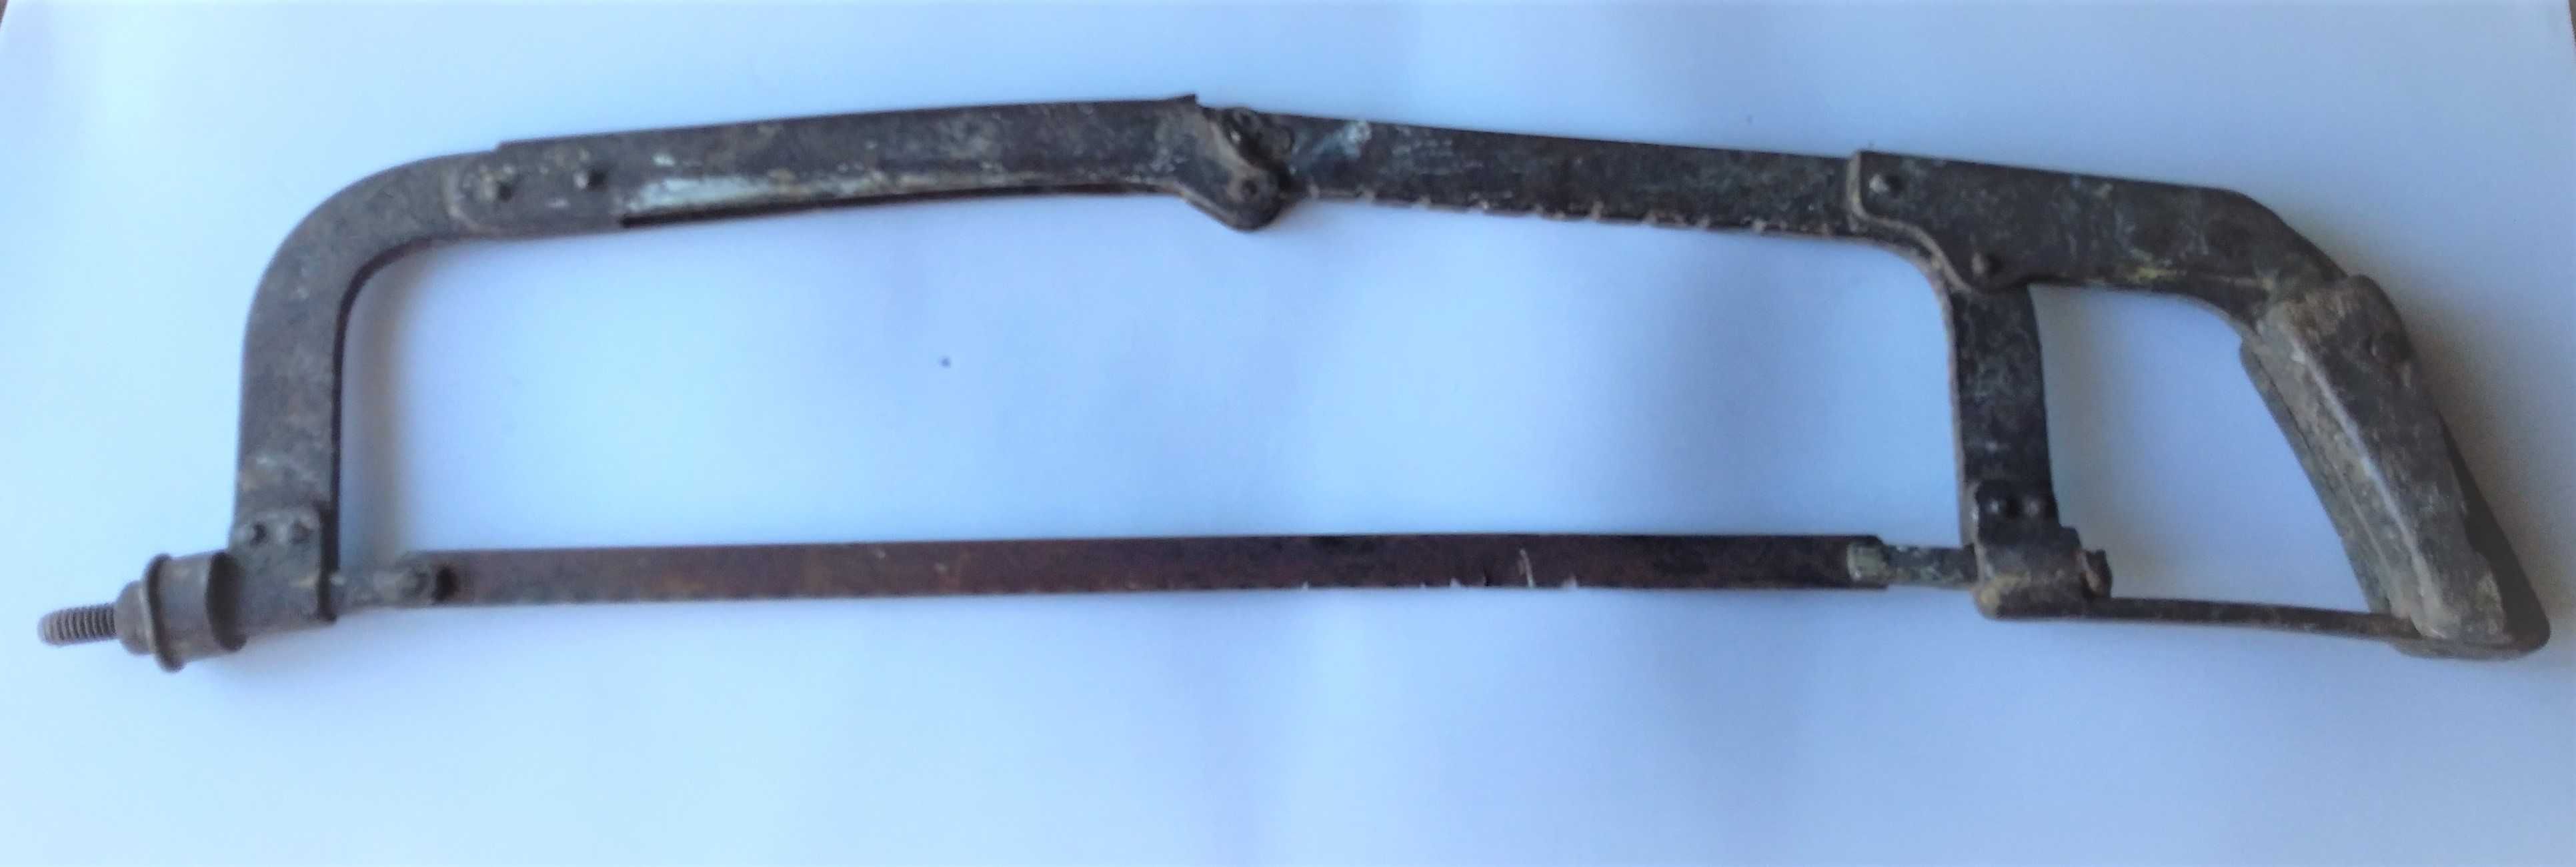 Antigo serrote em metal com 20 cm de comprimento